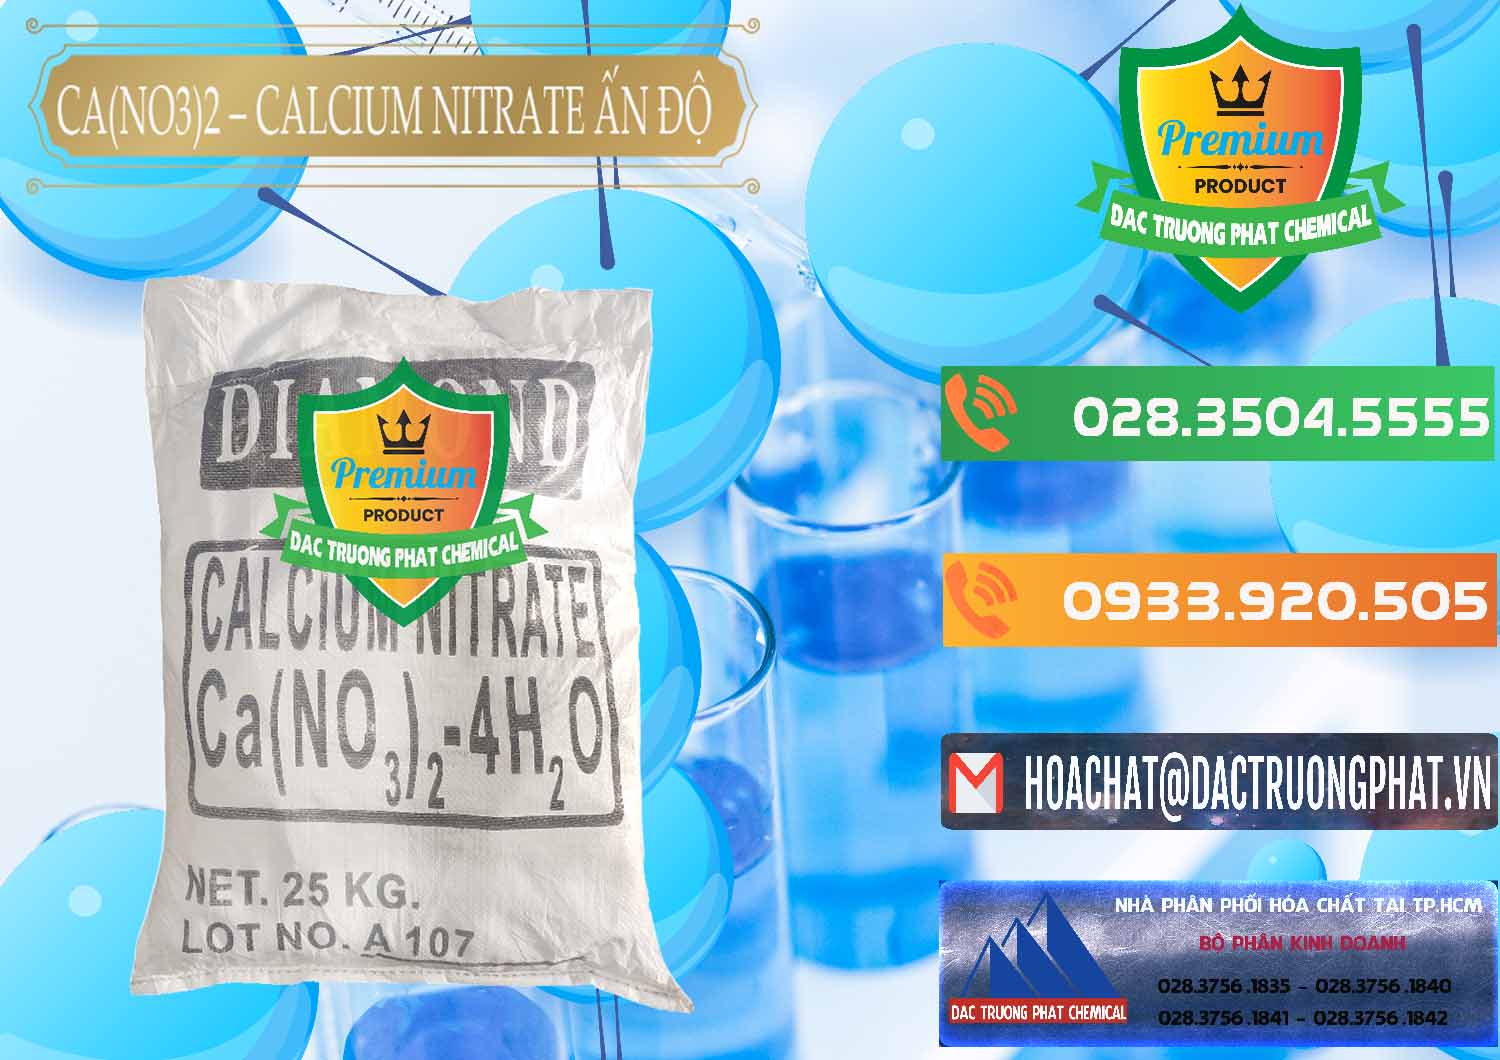 Cty bán & cung cấp CA(NO3)2 – Calcium Nitrate Ấn Độ India - 0038 - Nơi chuyên kinh doanh & cung cấp hóa chất tại TP.HCM - hoachatxulynuoc.com.vn